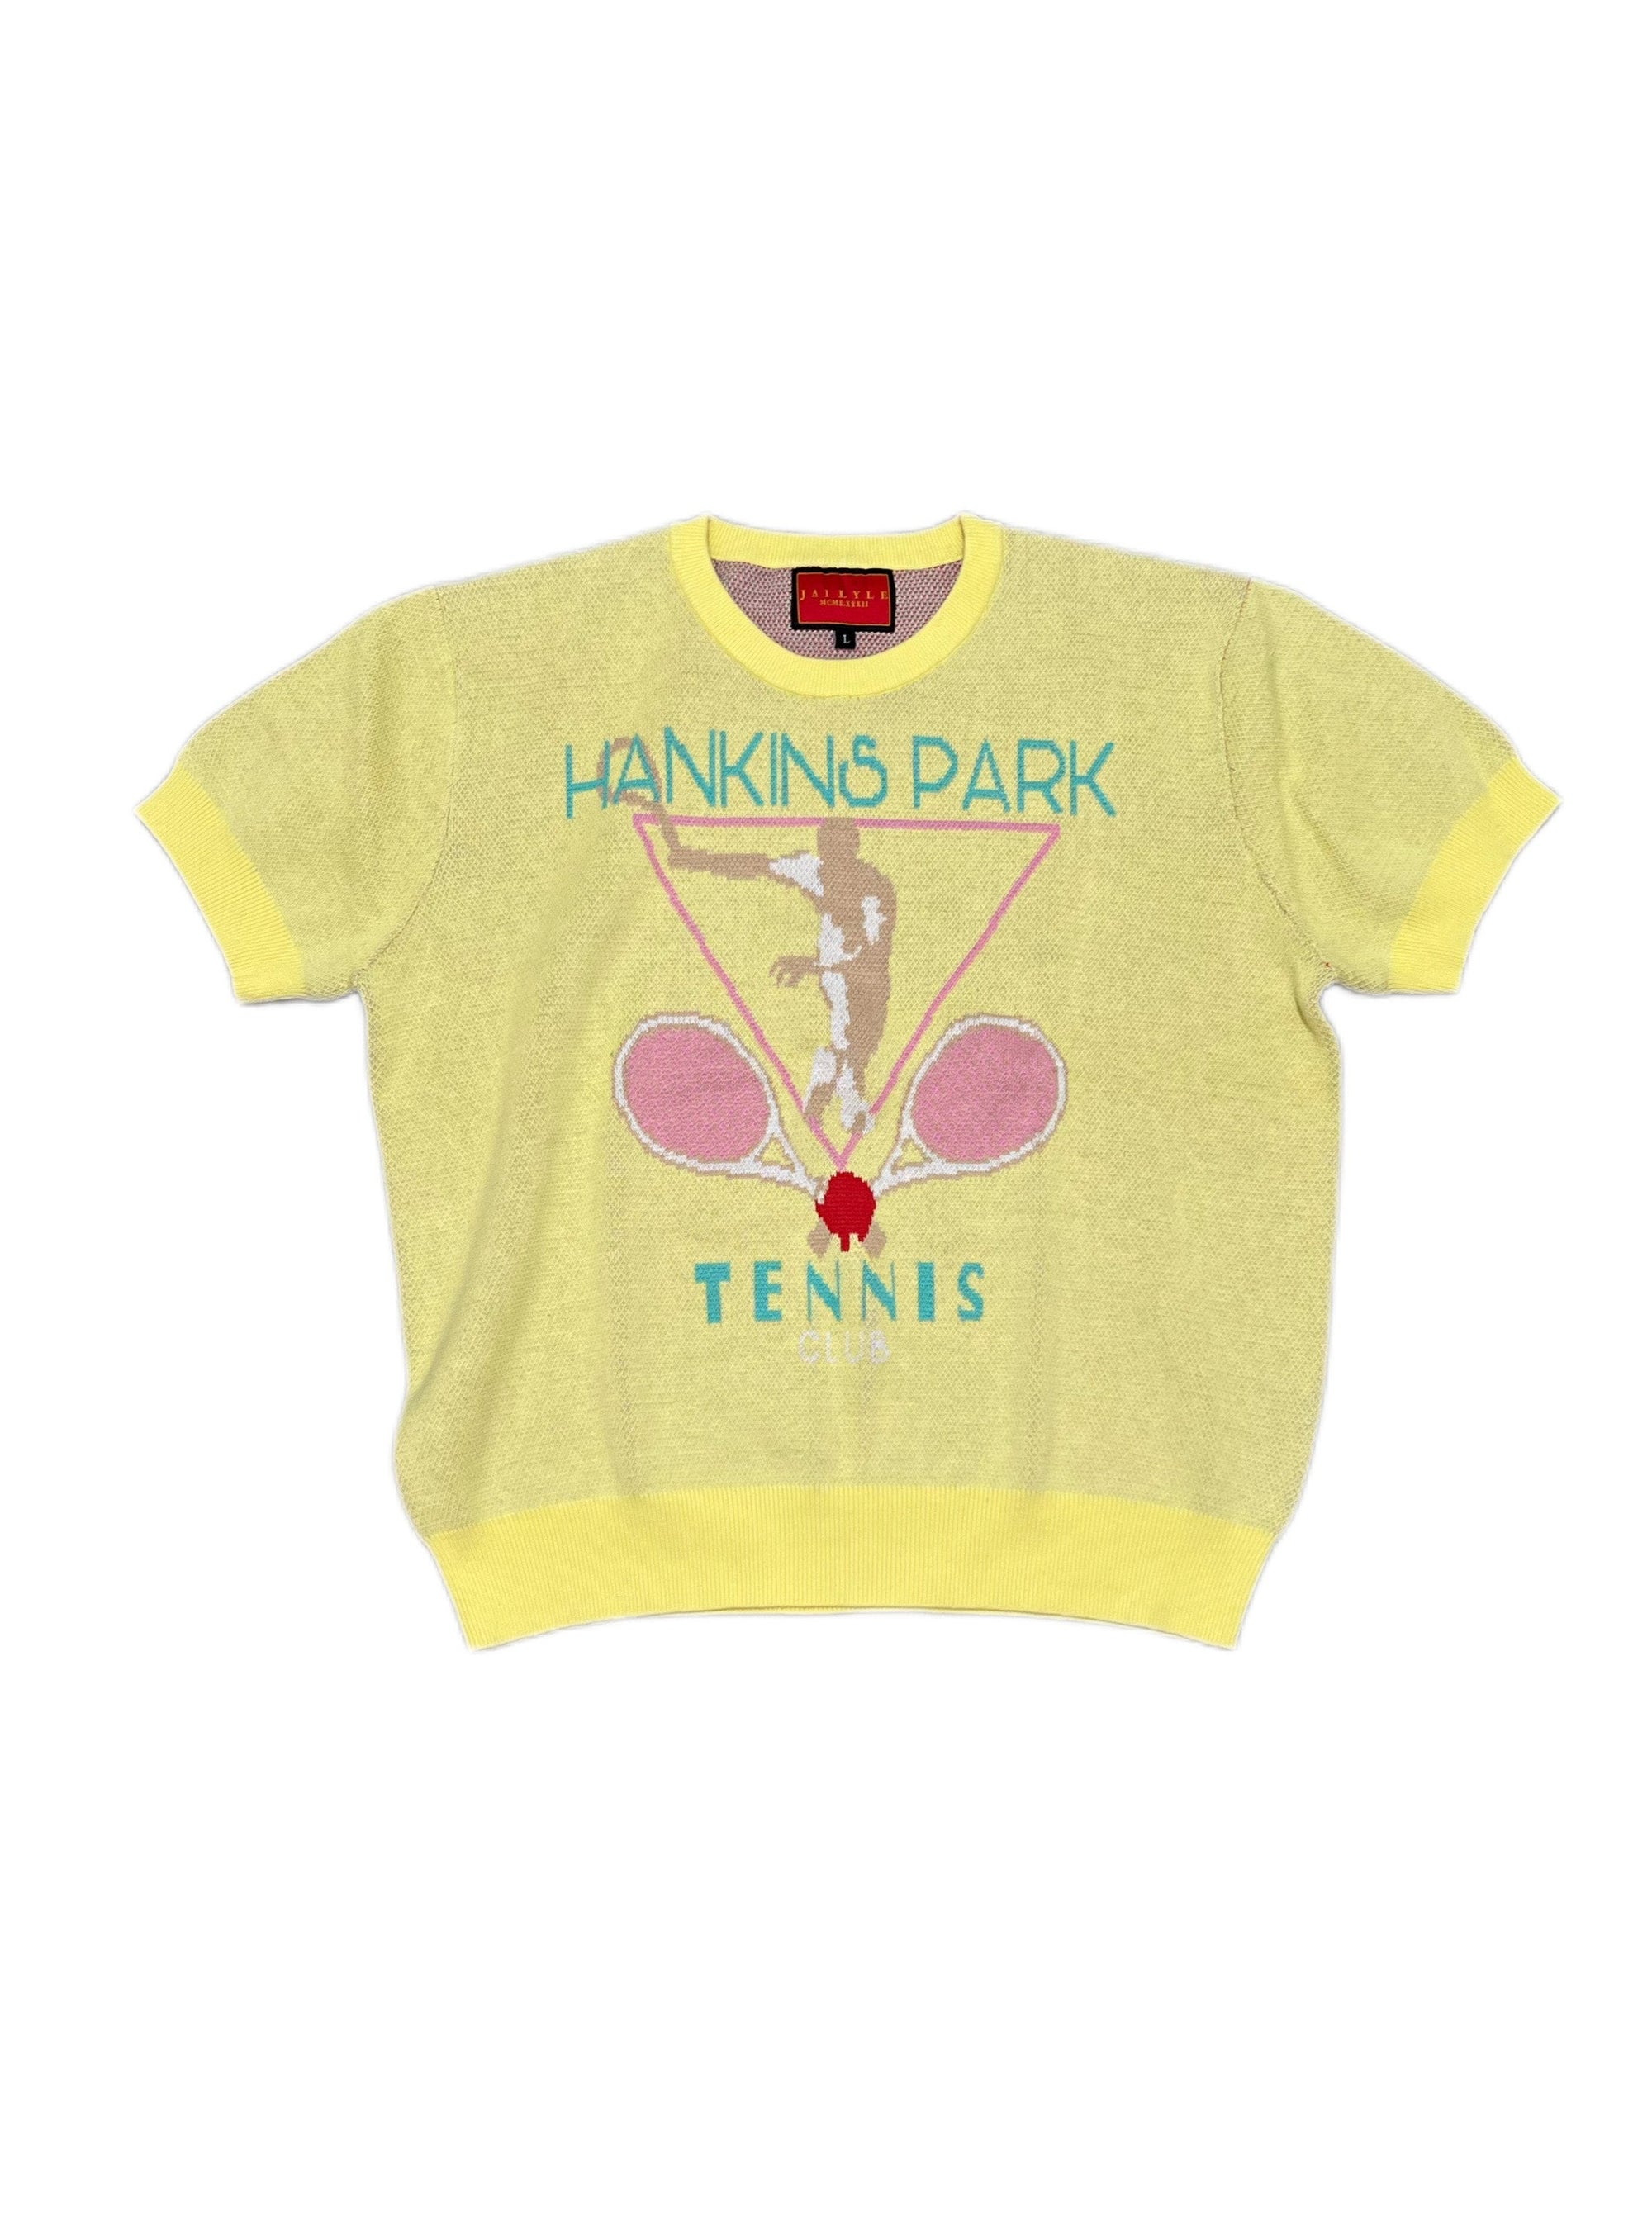 HANKINS PARK TENNIS SWEATER SHIRT